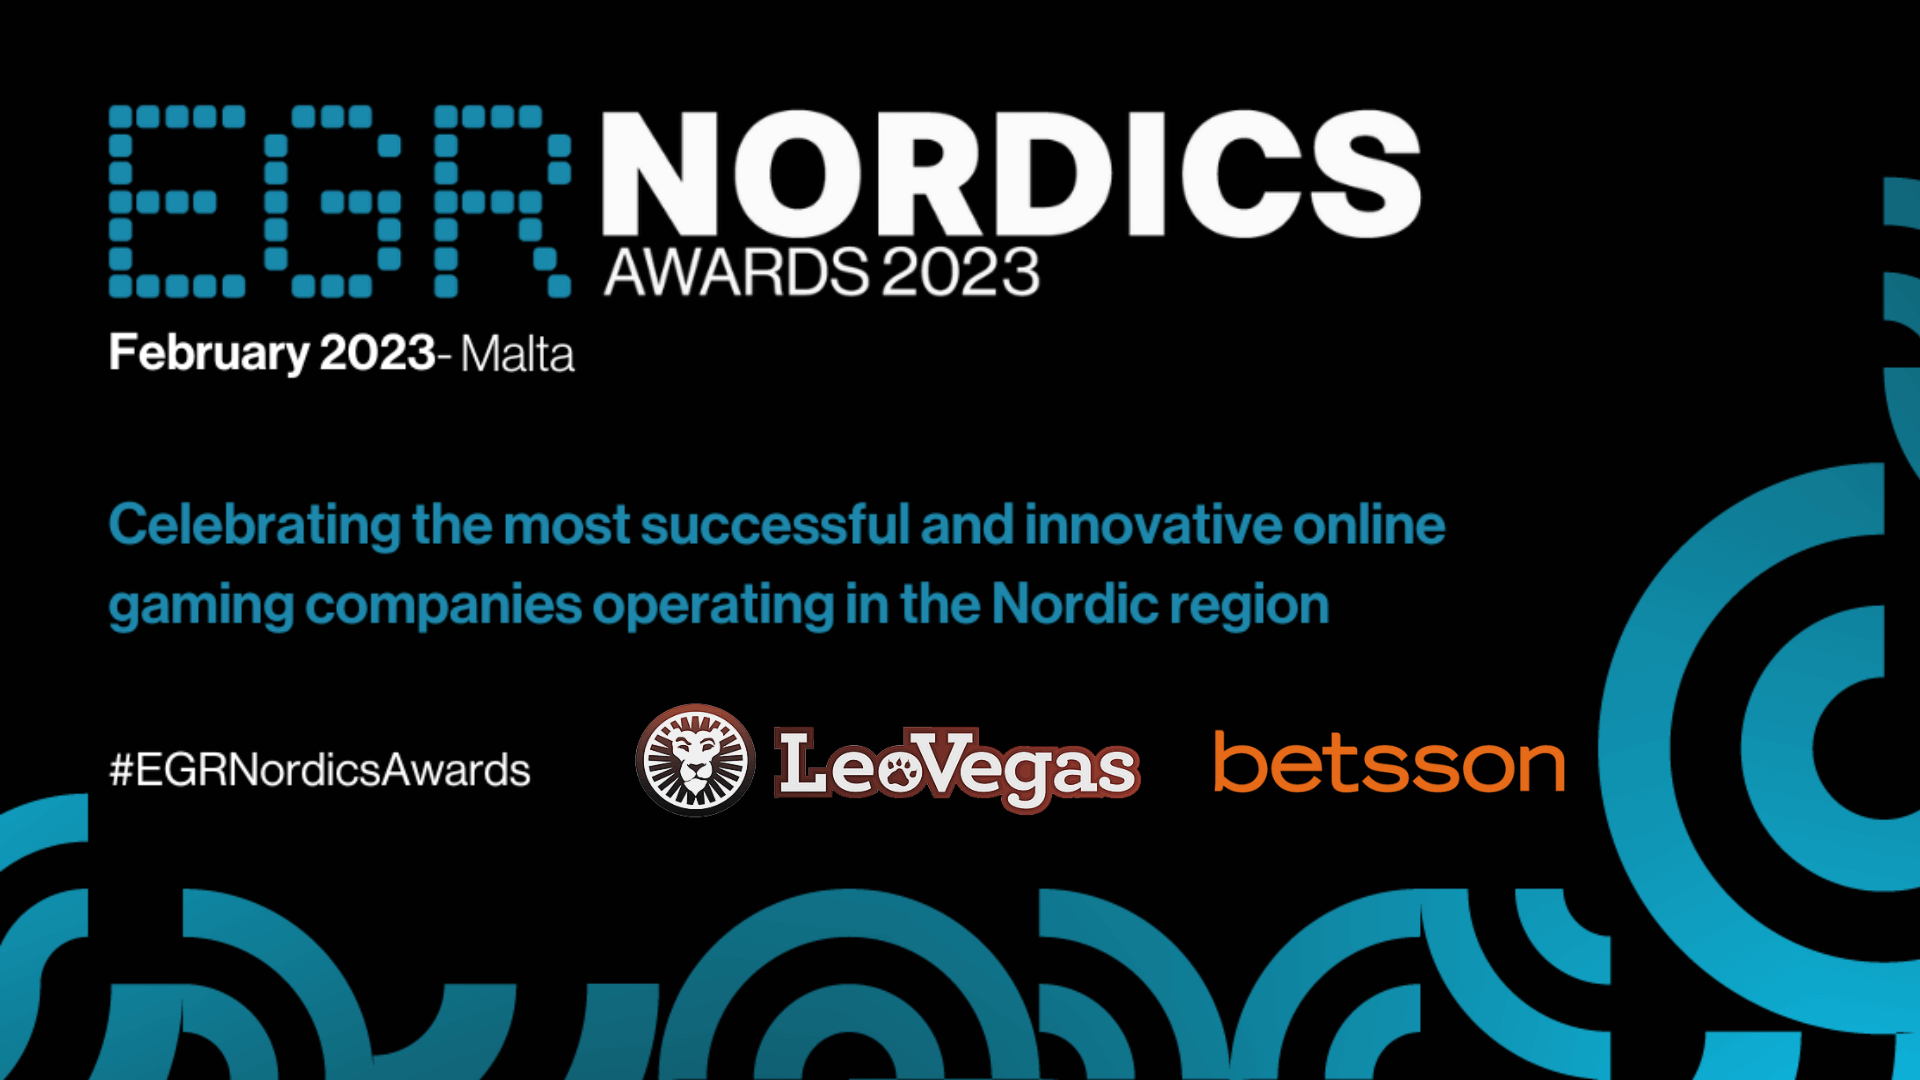 EGR Nordics Awards 2023, LeoVegas re del casinò nell’area nordica. Betsson Group porta a casa sei premi